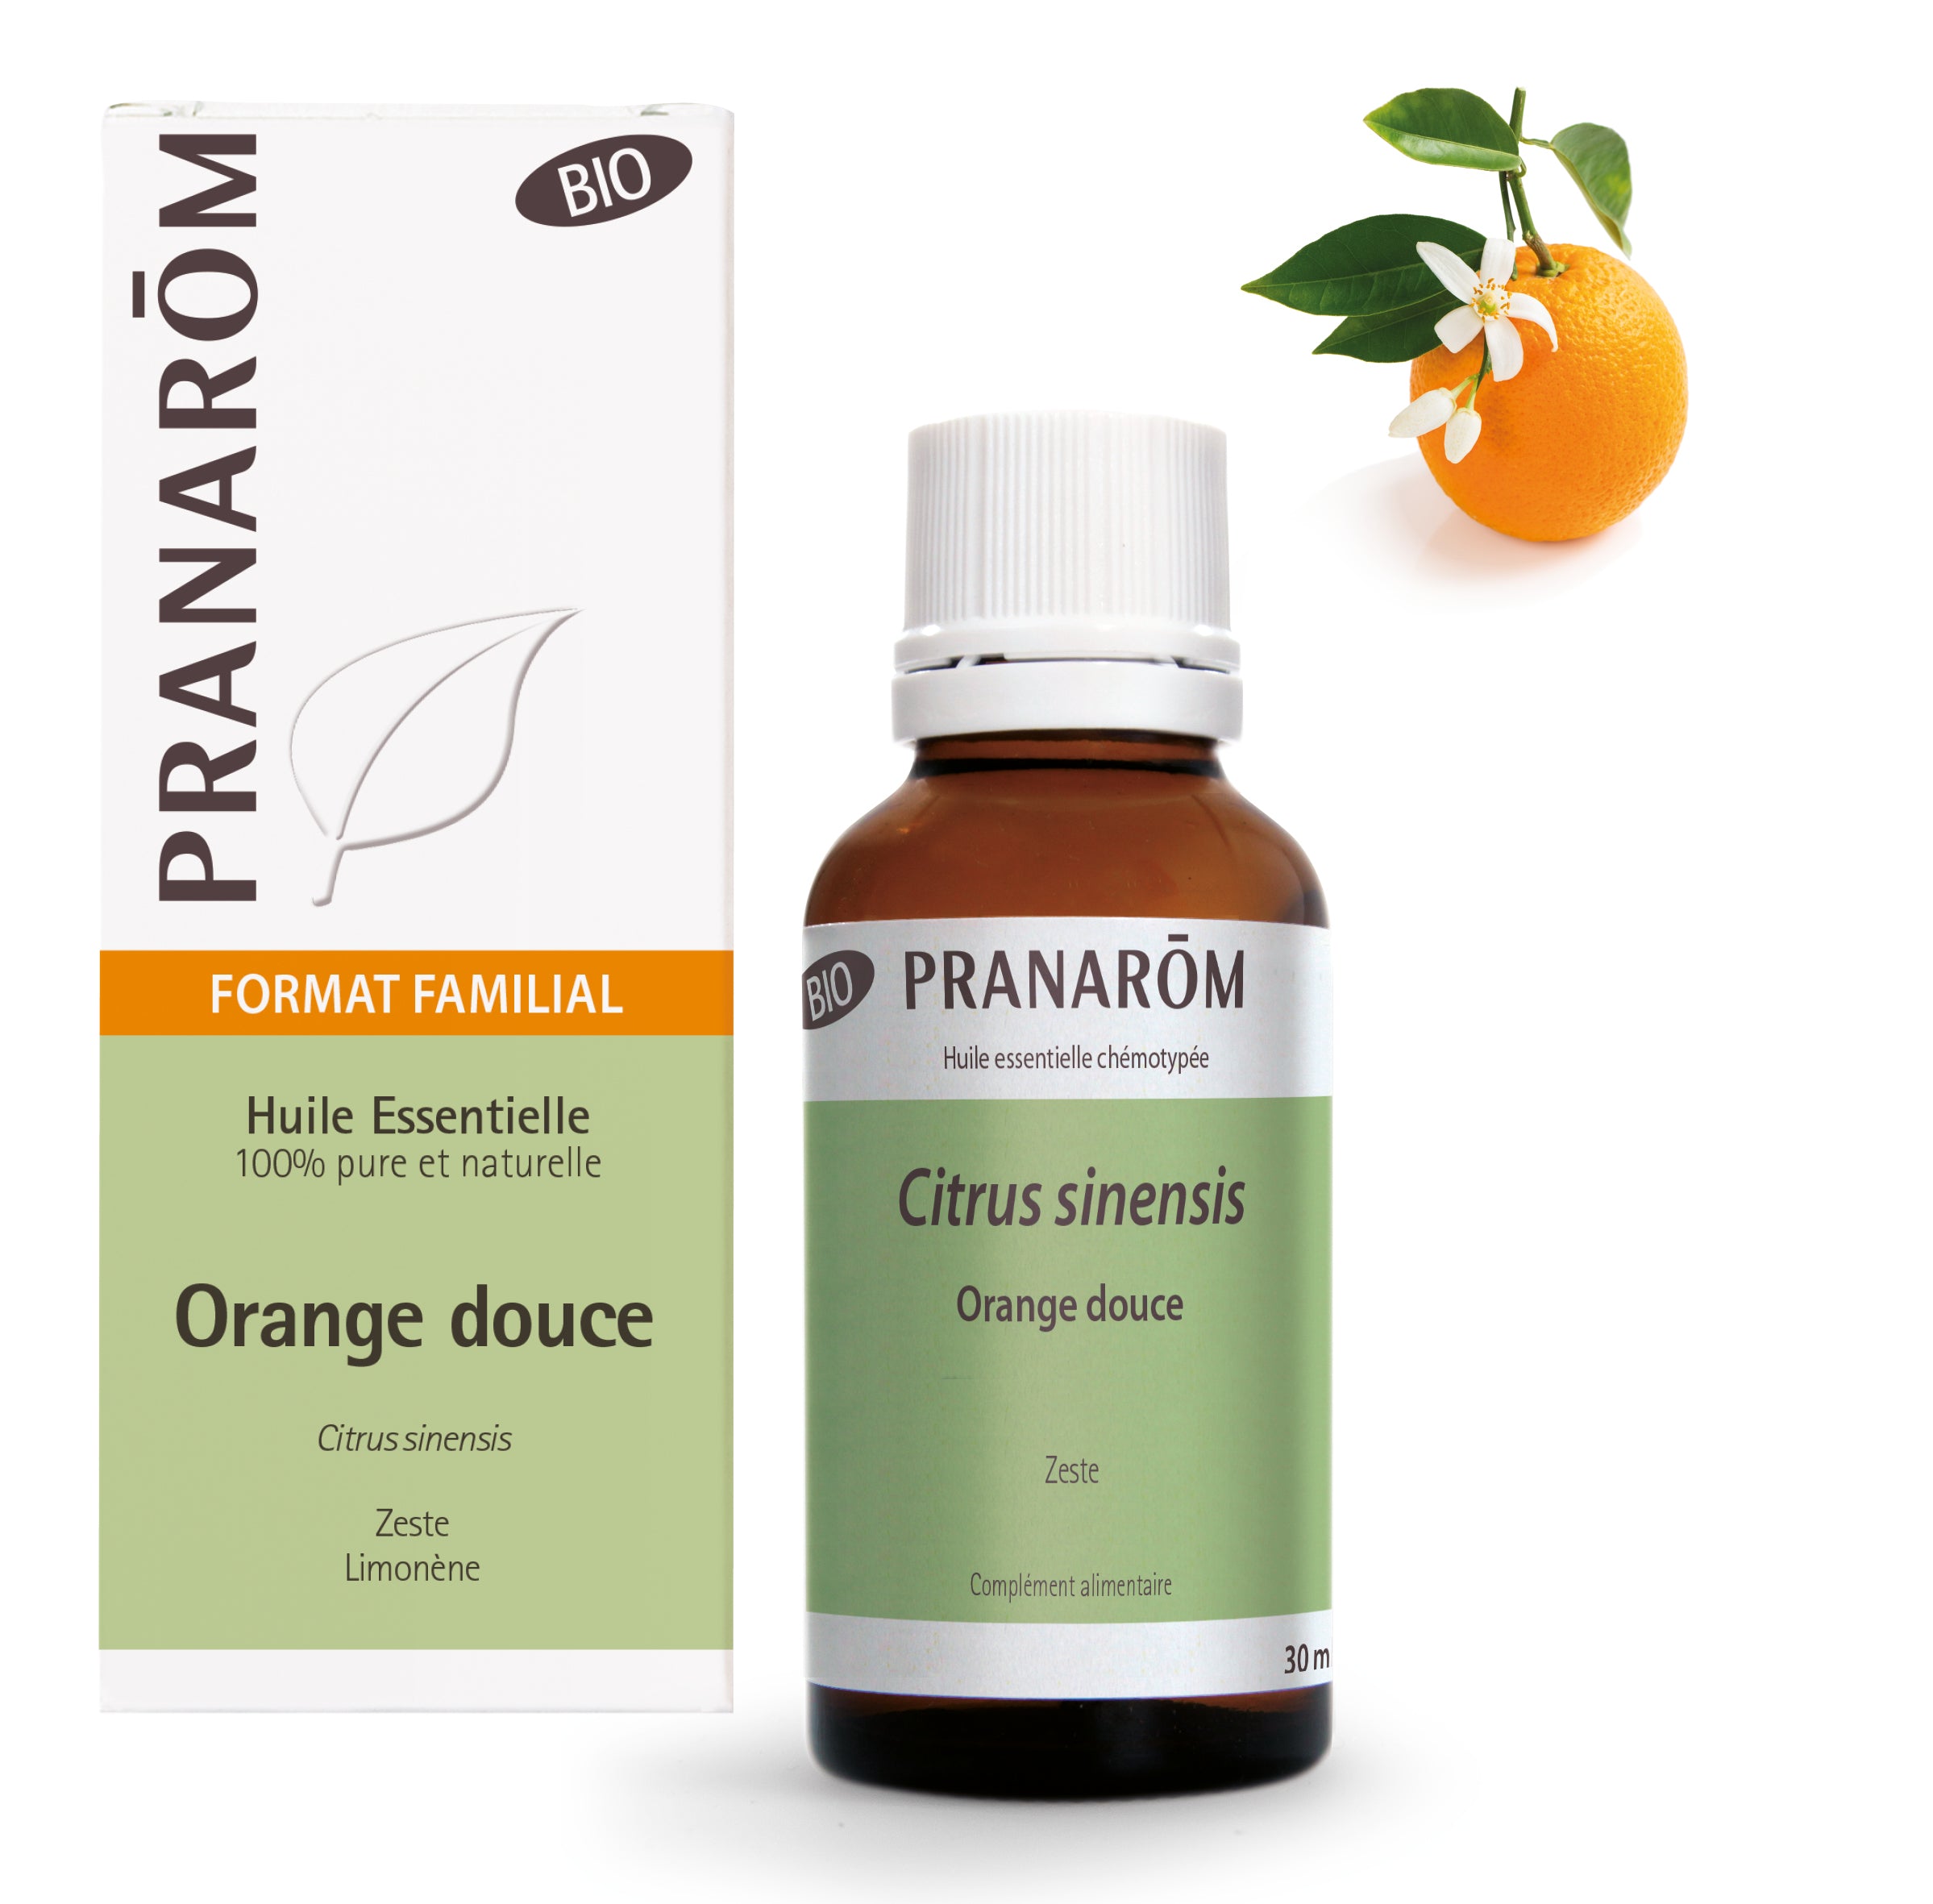 Huile essentielle d'Orange douce bio - 10 ml